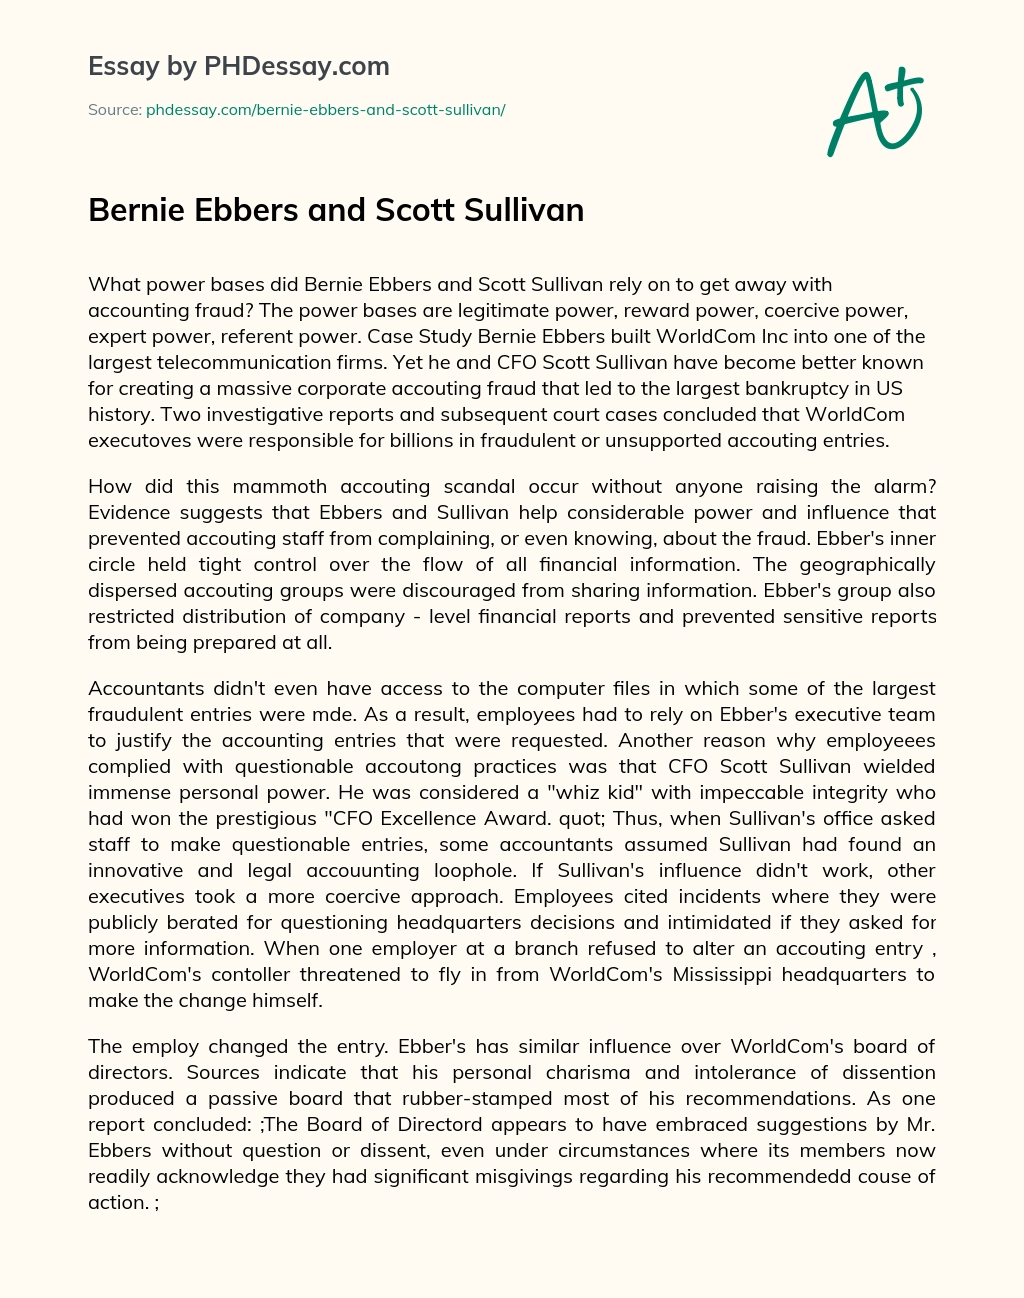 Bernie Ebbers and Scott Sullivan essay